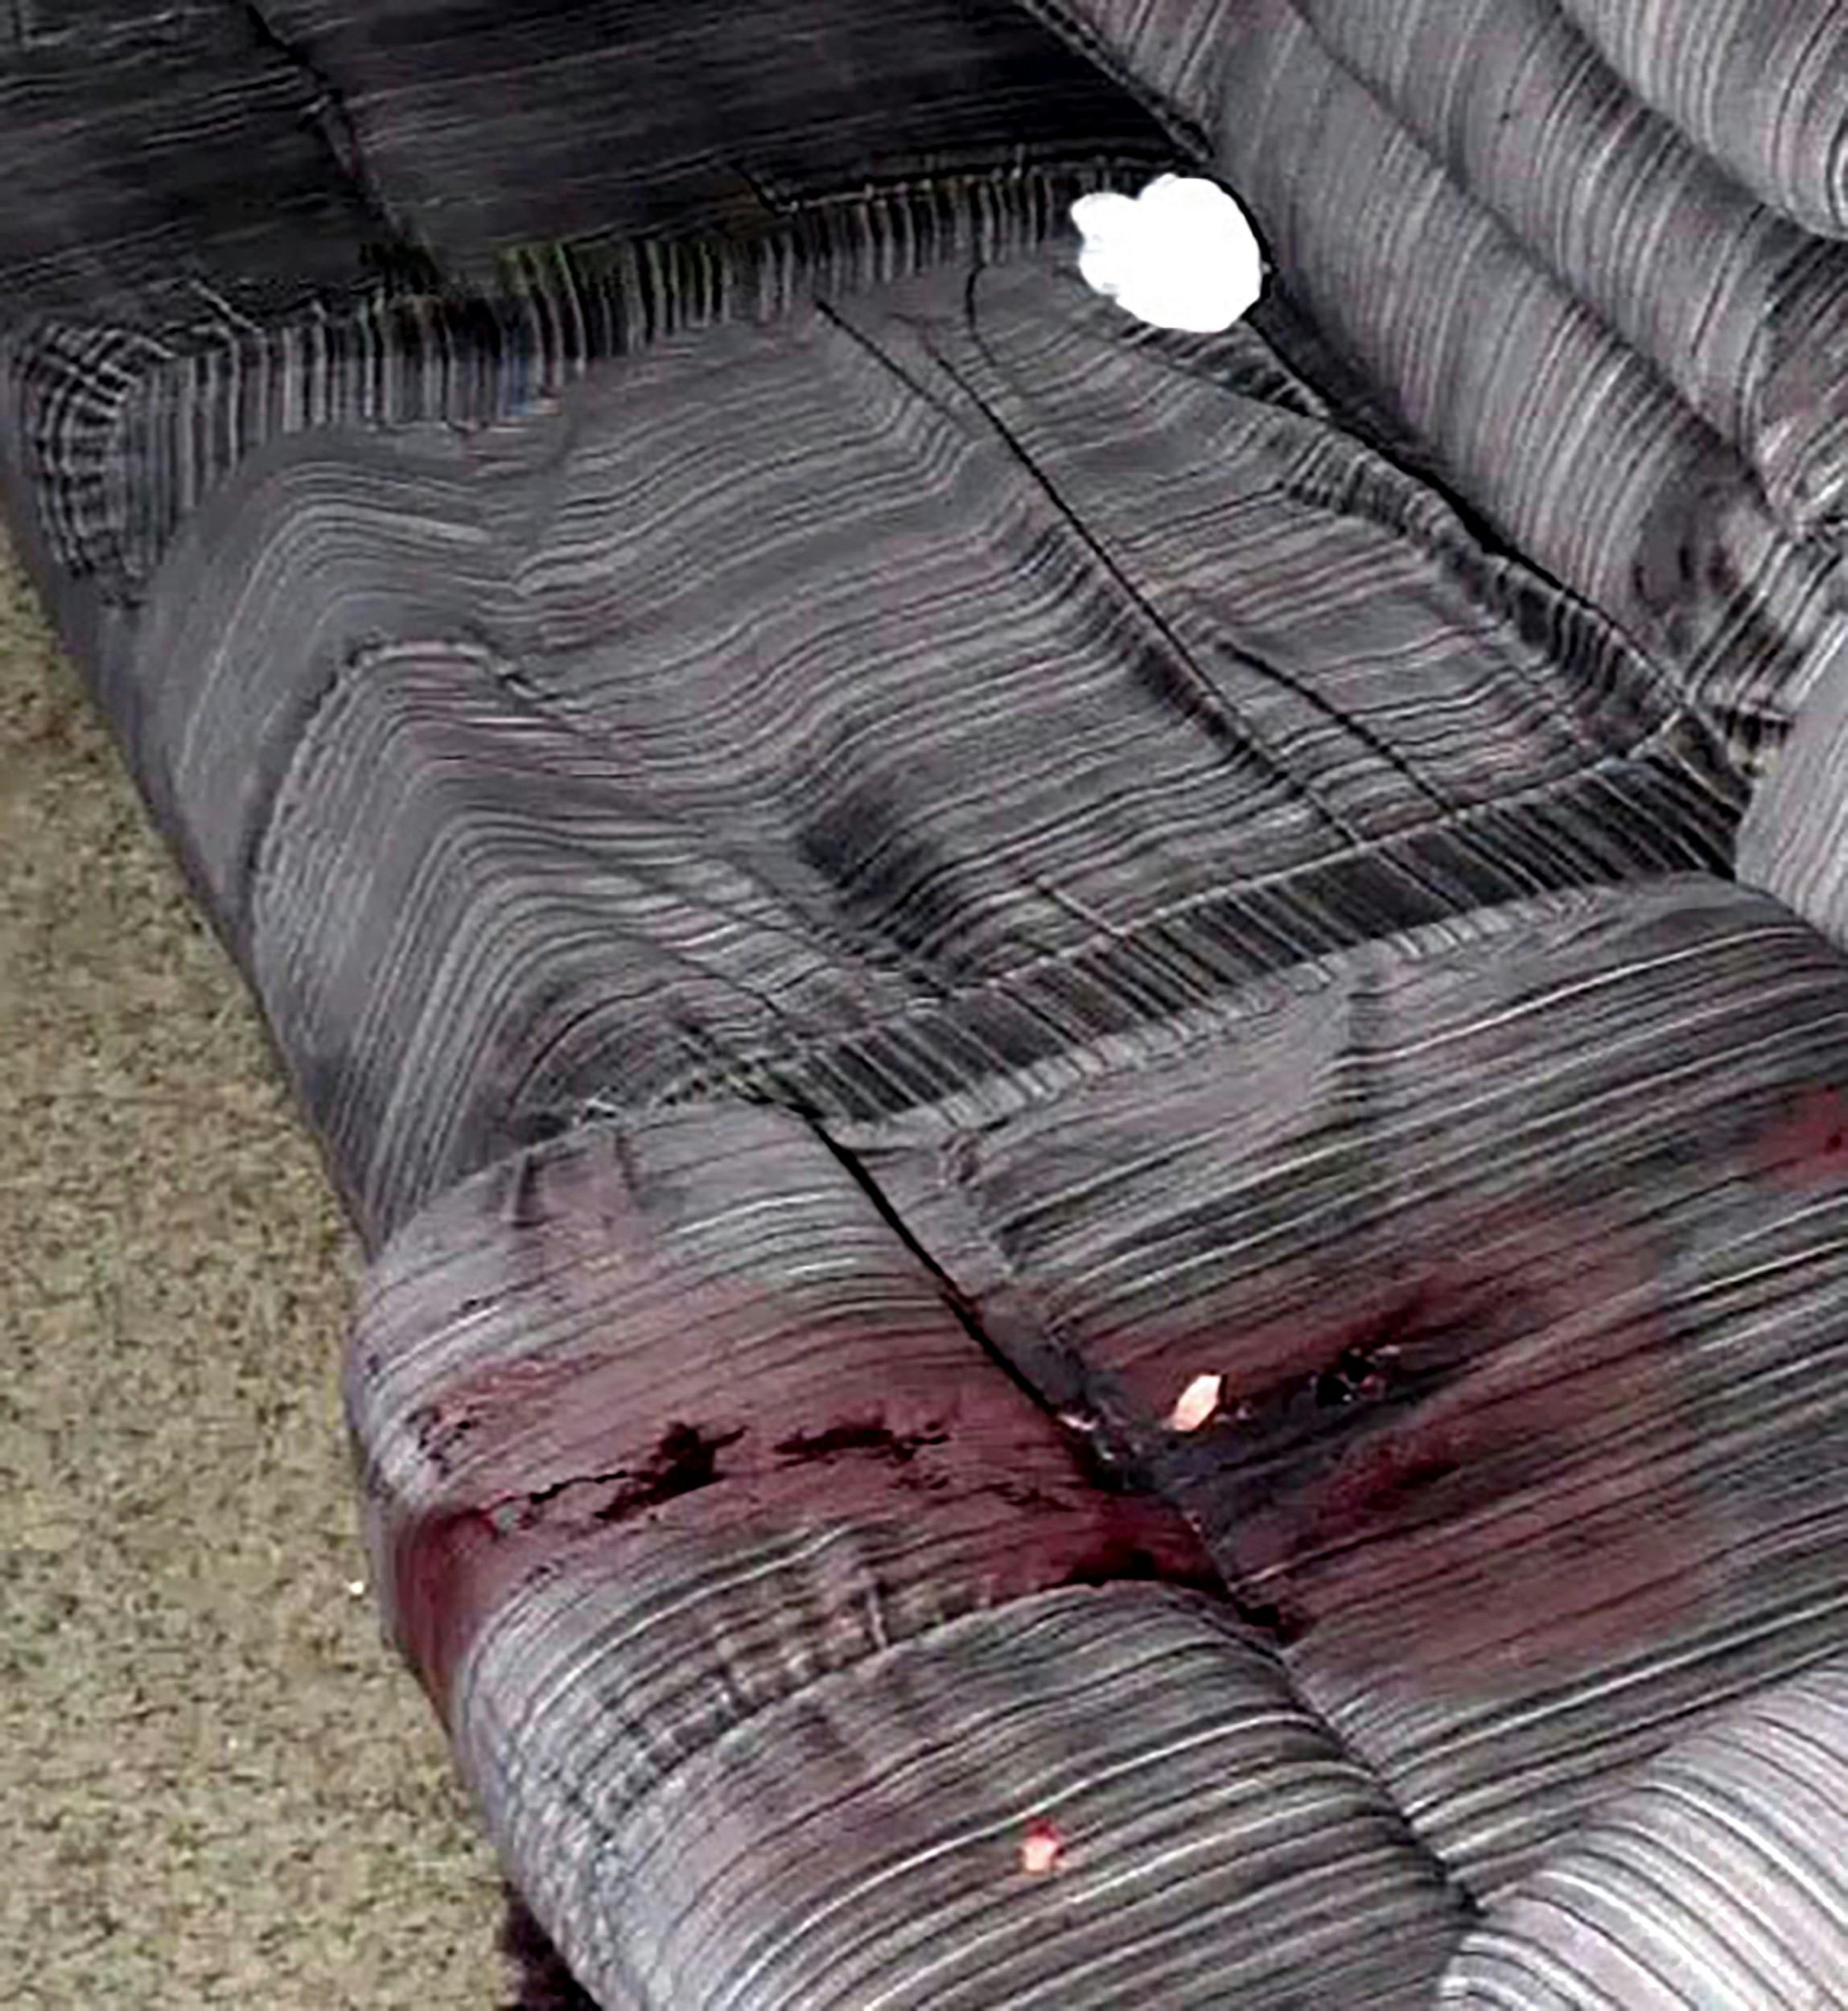 Store mængder blod på sofaen vidnede om, at drabet skete med stor voldsomhed.